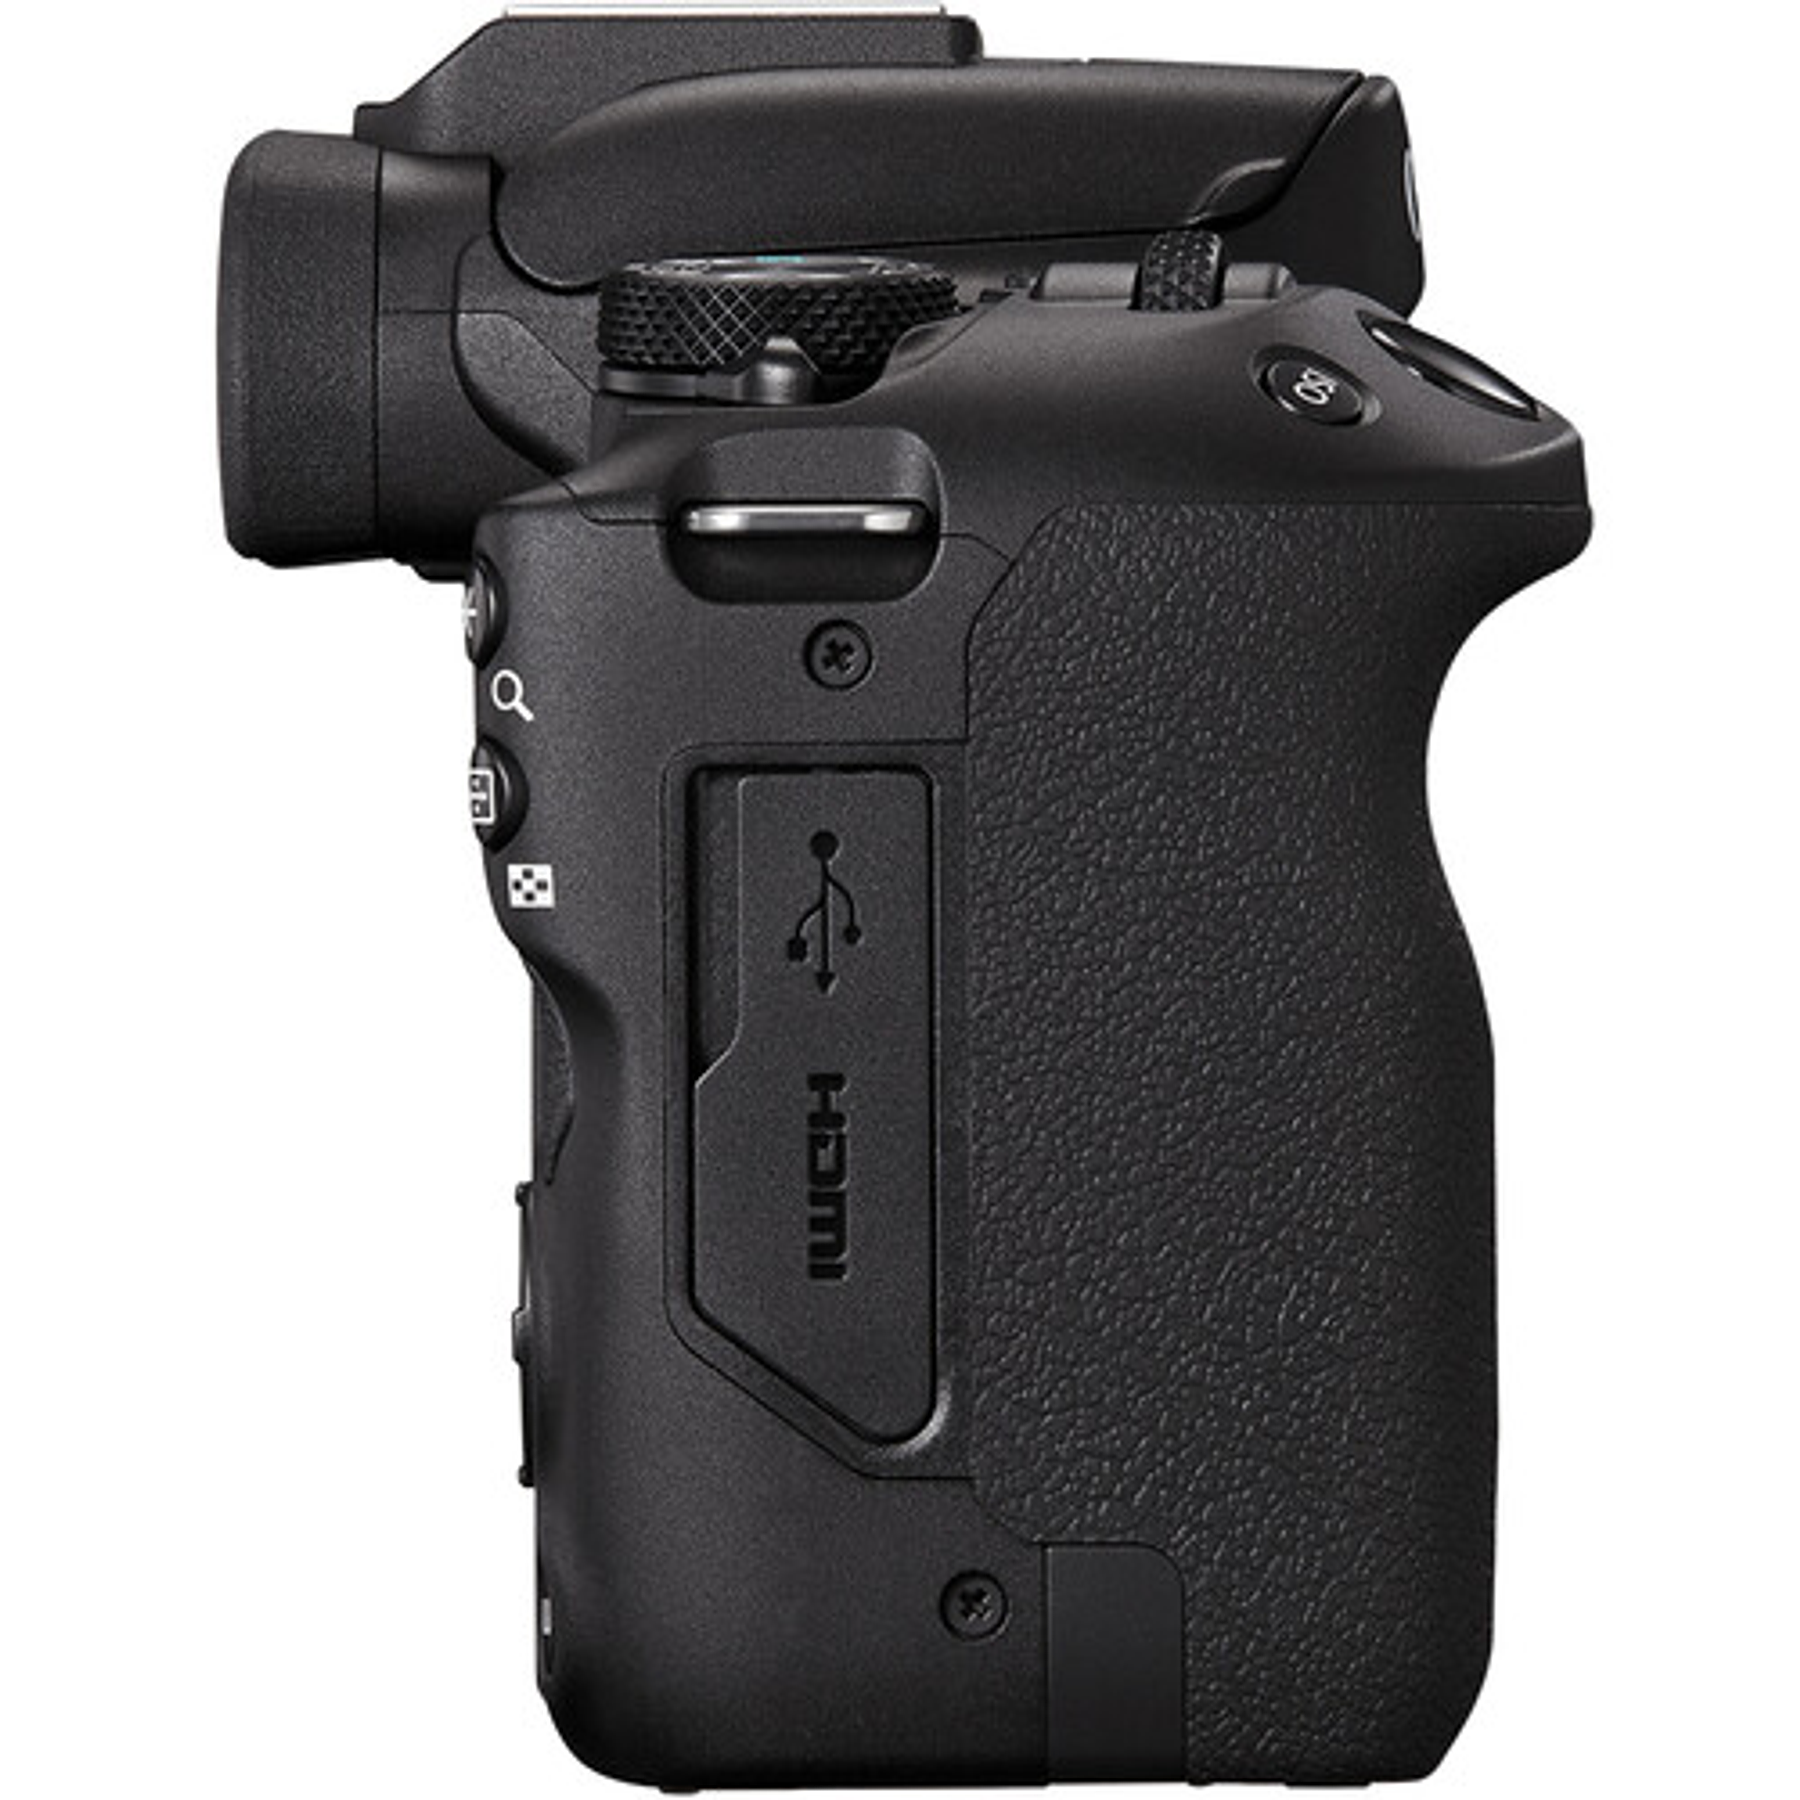 Canon EOS R50 con lentes de 18-45 mm y 55-210 mm (negro)